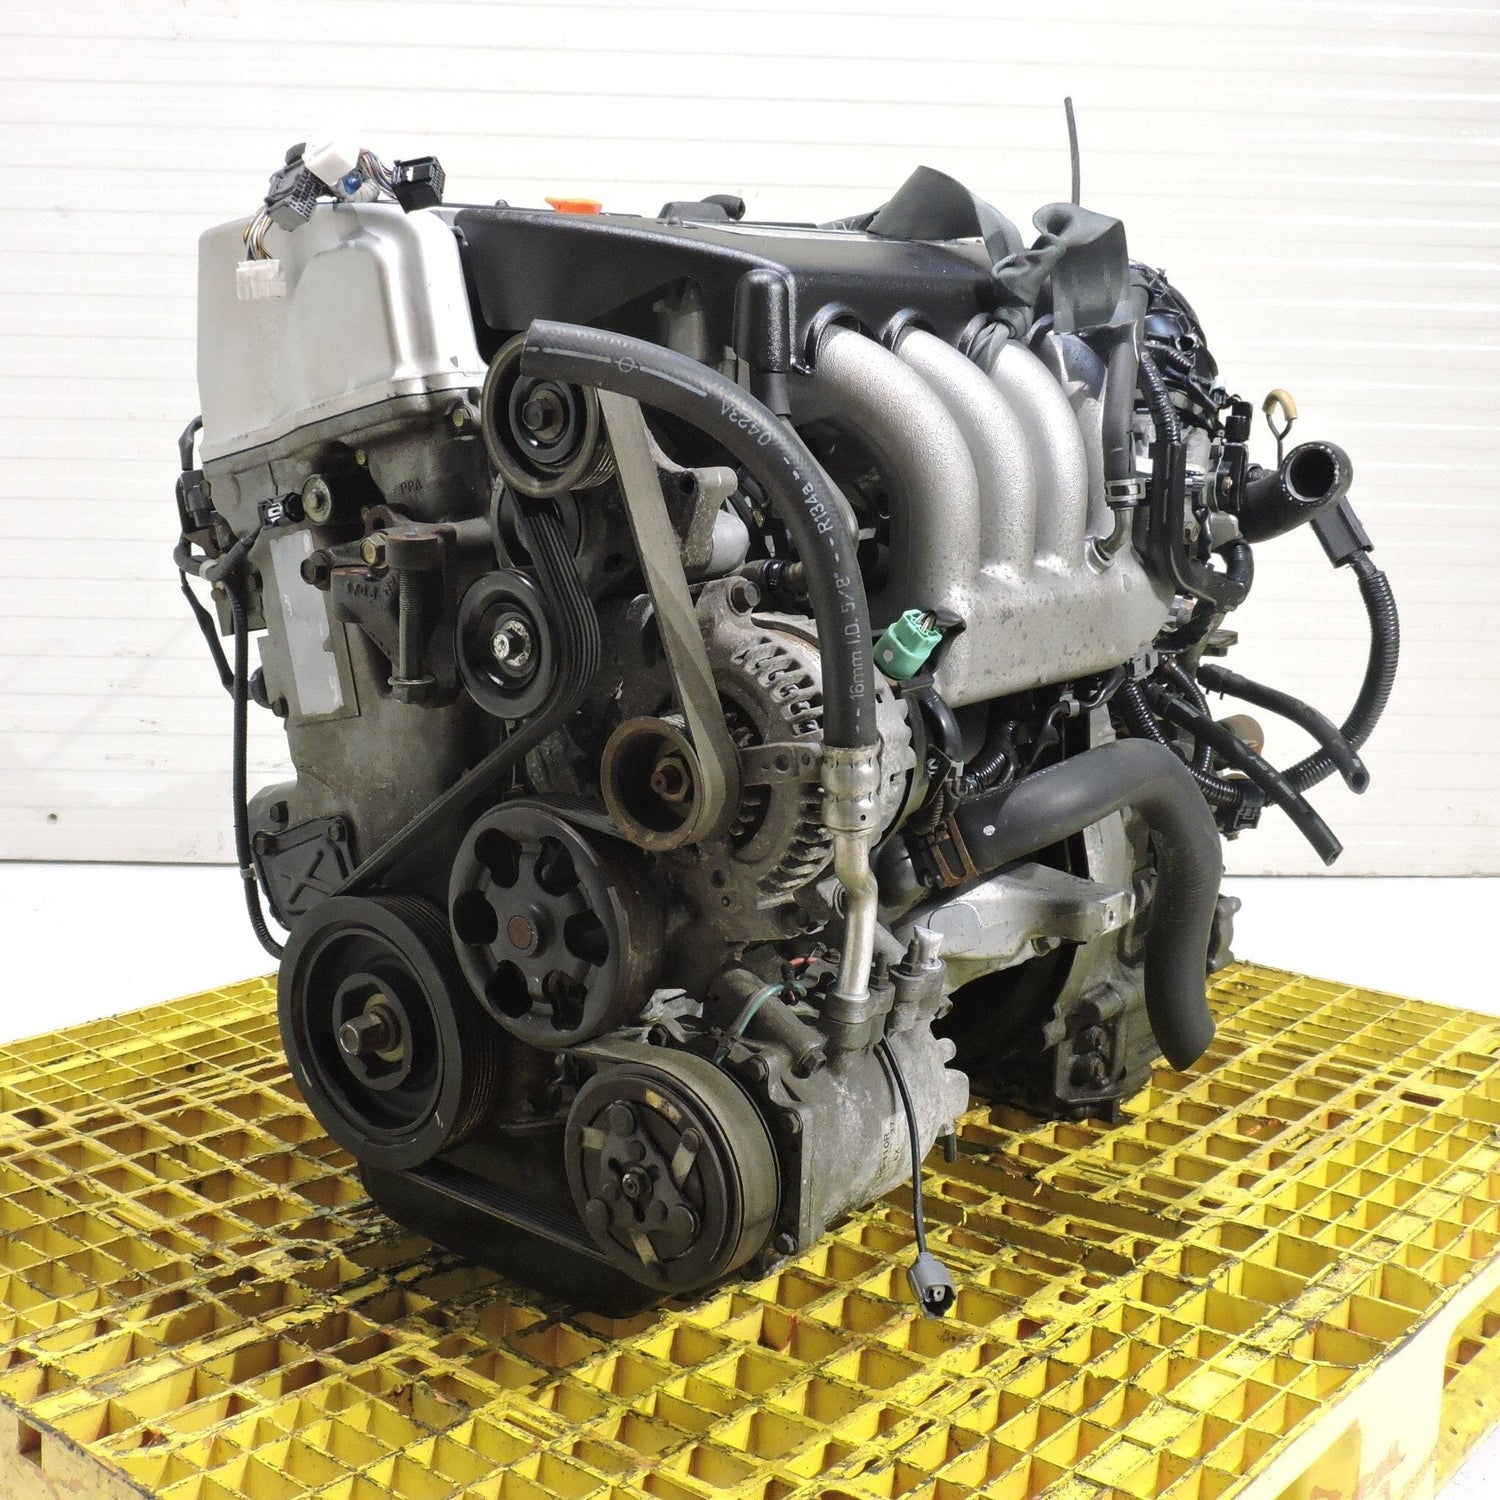 Honda Accord 2003-2007 2.4L Dohc I-Vtec Complete Engine Transmission K24a